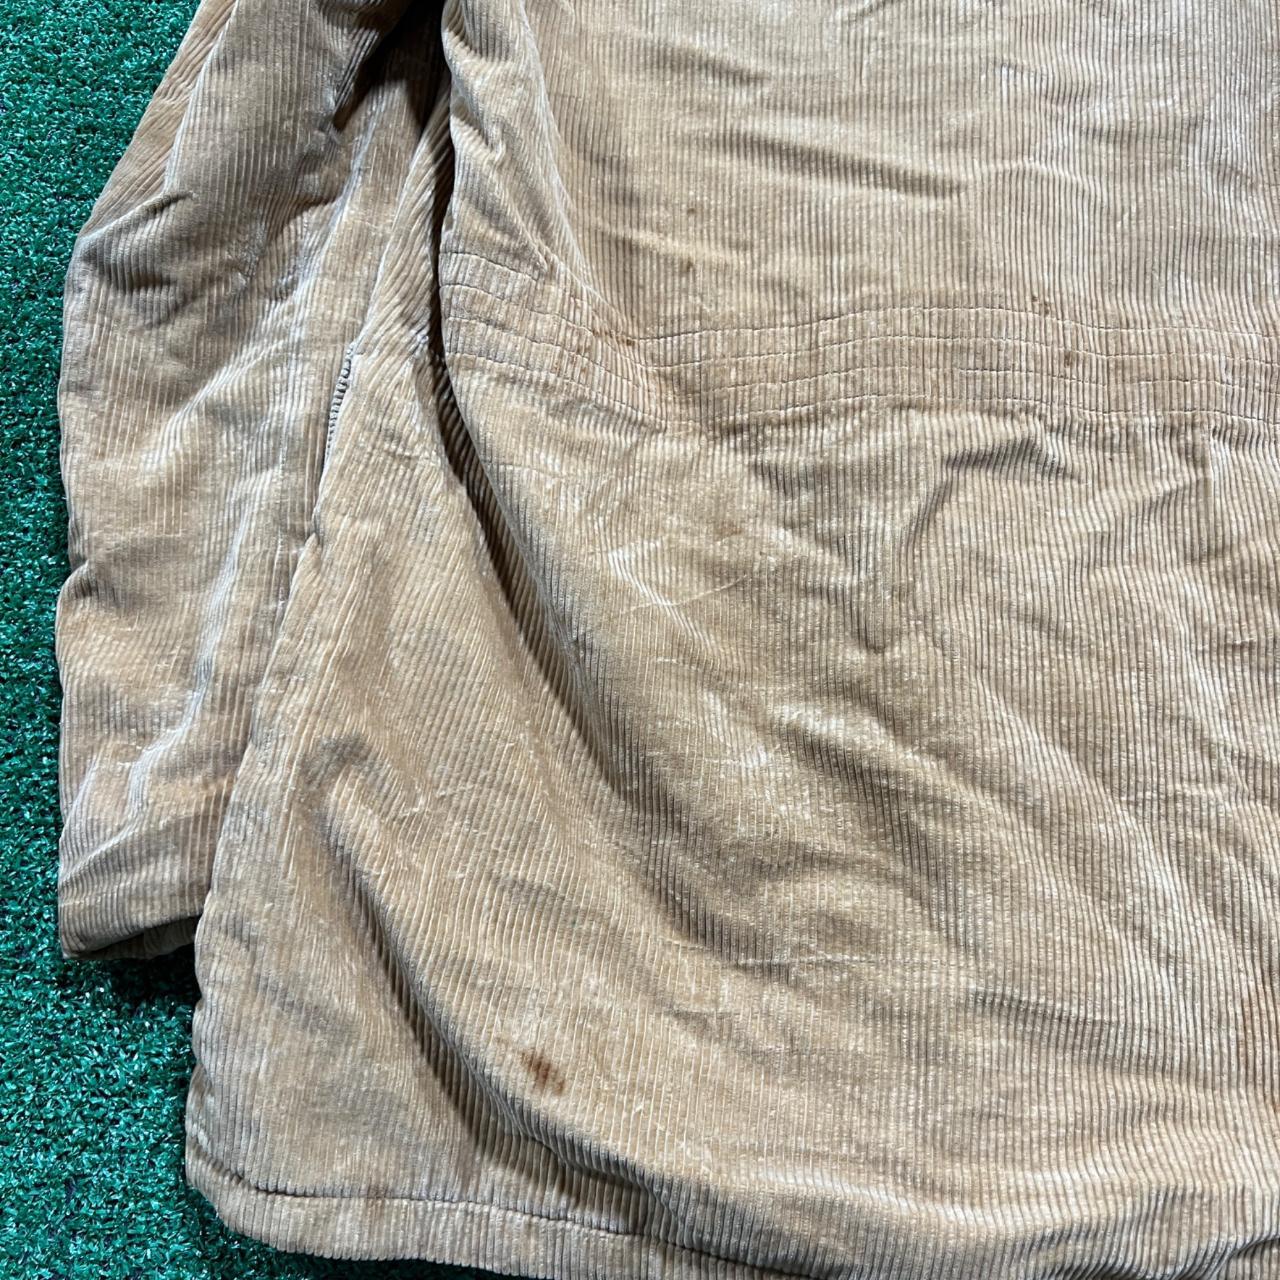 vintage mcgregor corduroy jacket size large or XL... - Depop